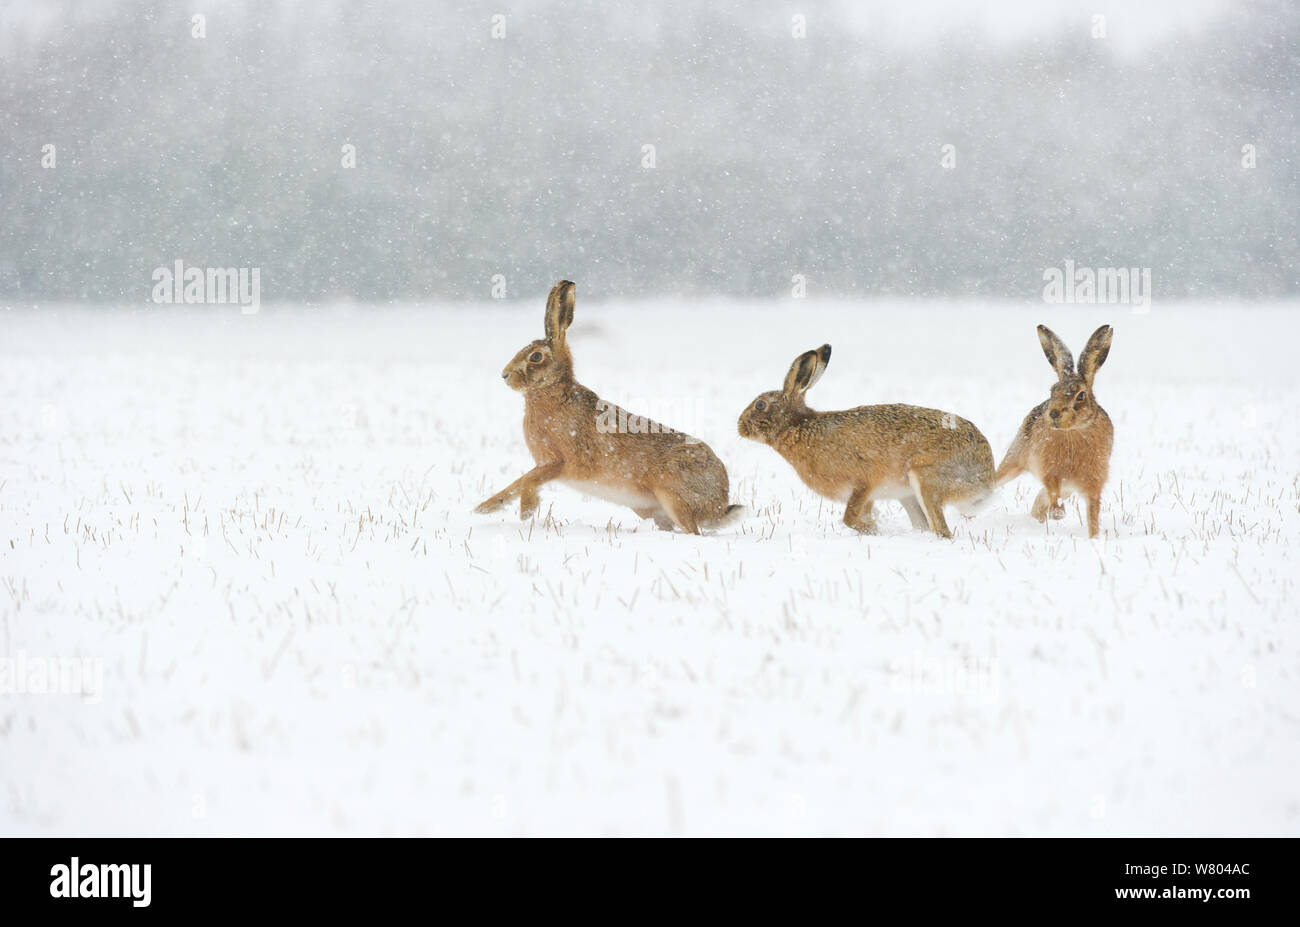 Feldhase (Lepus europaeus) jeweils ein Männchen (rechts) in der Nähe eines potenziell empfänglichen Frauen im Schnee bedeckt bleiben bei einer Schnee fallen. Derbyshire, Großbritannien. Stockfoto